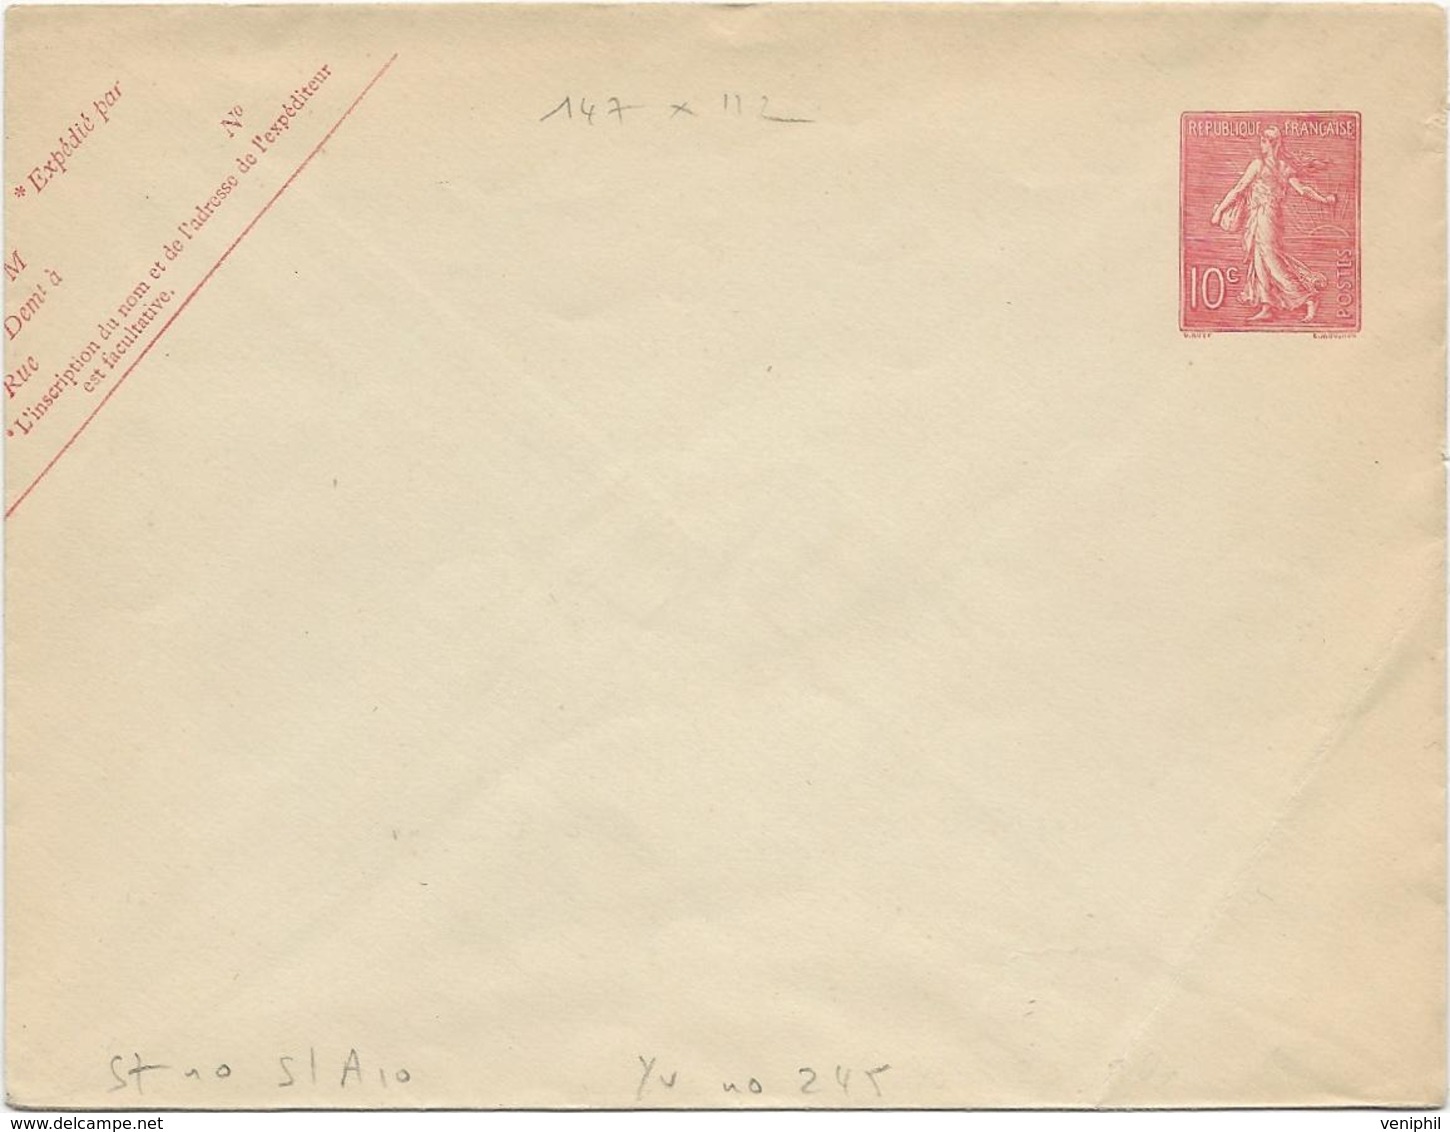 LETTRE ENTIER POSTAL N° 129 SEMEUSE LIGNEE- 1903 - Enveloppes Types Et TSC (avant 1995)